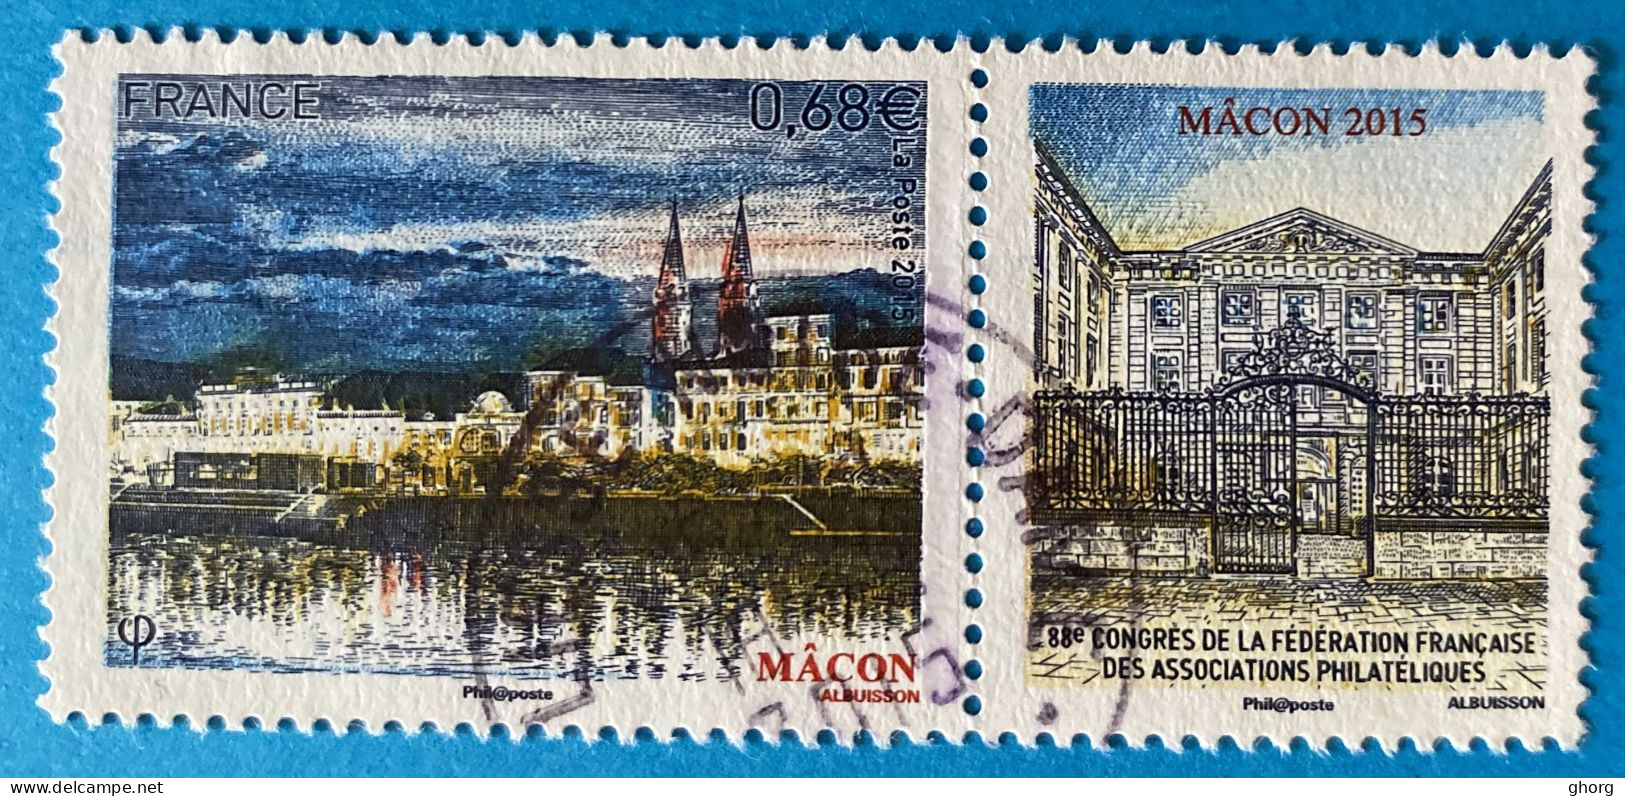 France 2015 : 88e Congrès De La Fédération Françaises Des Associations Philatéliques à Macon N° 4956 Oblitéré - Used Stamps